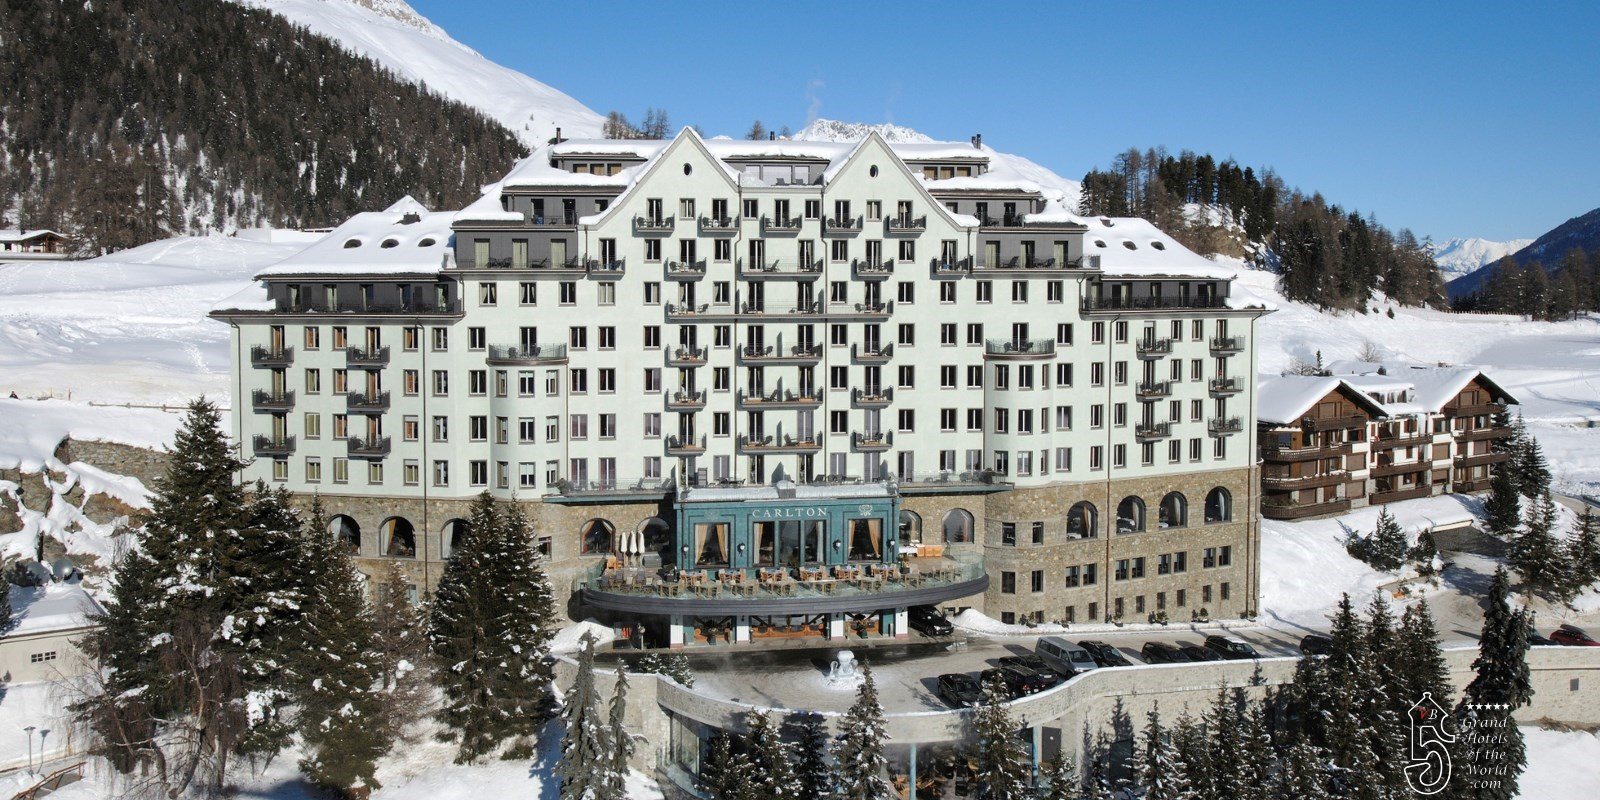 Hotel Carlton in St Moritz